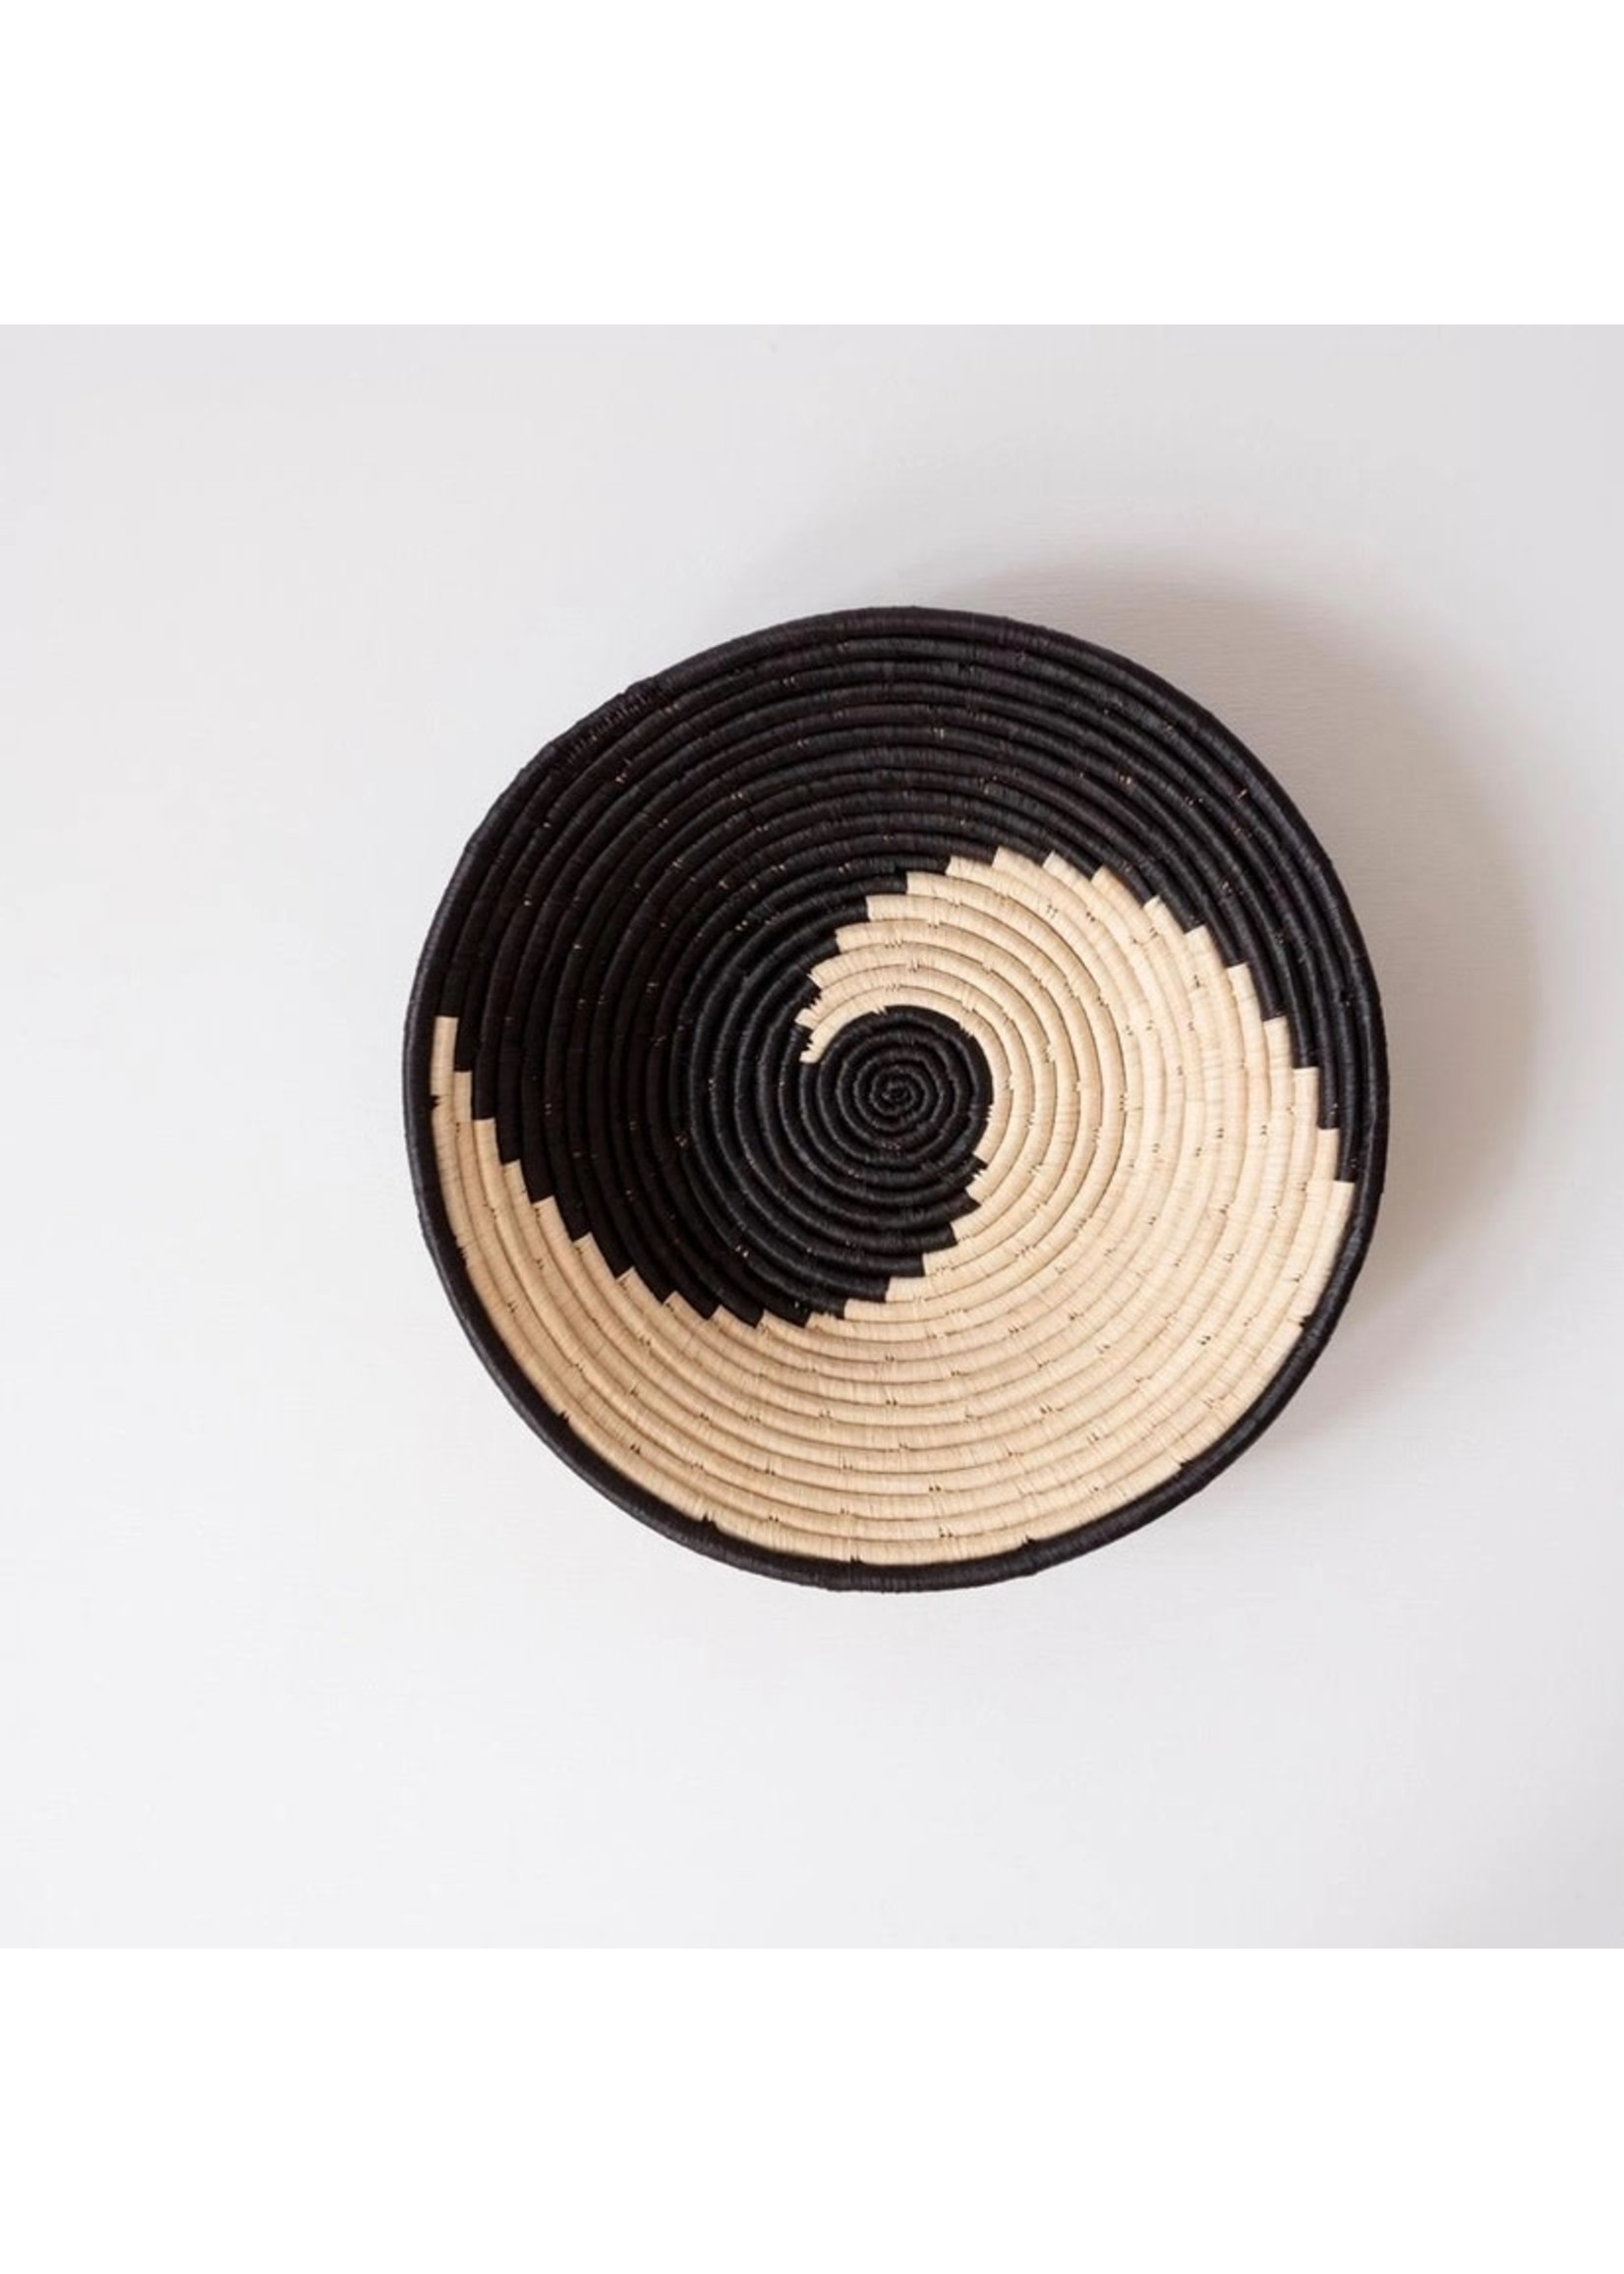 Basket- Simple Spiral